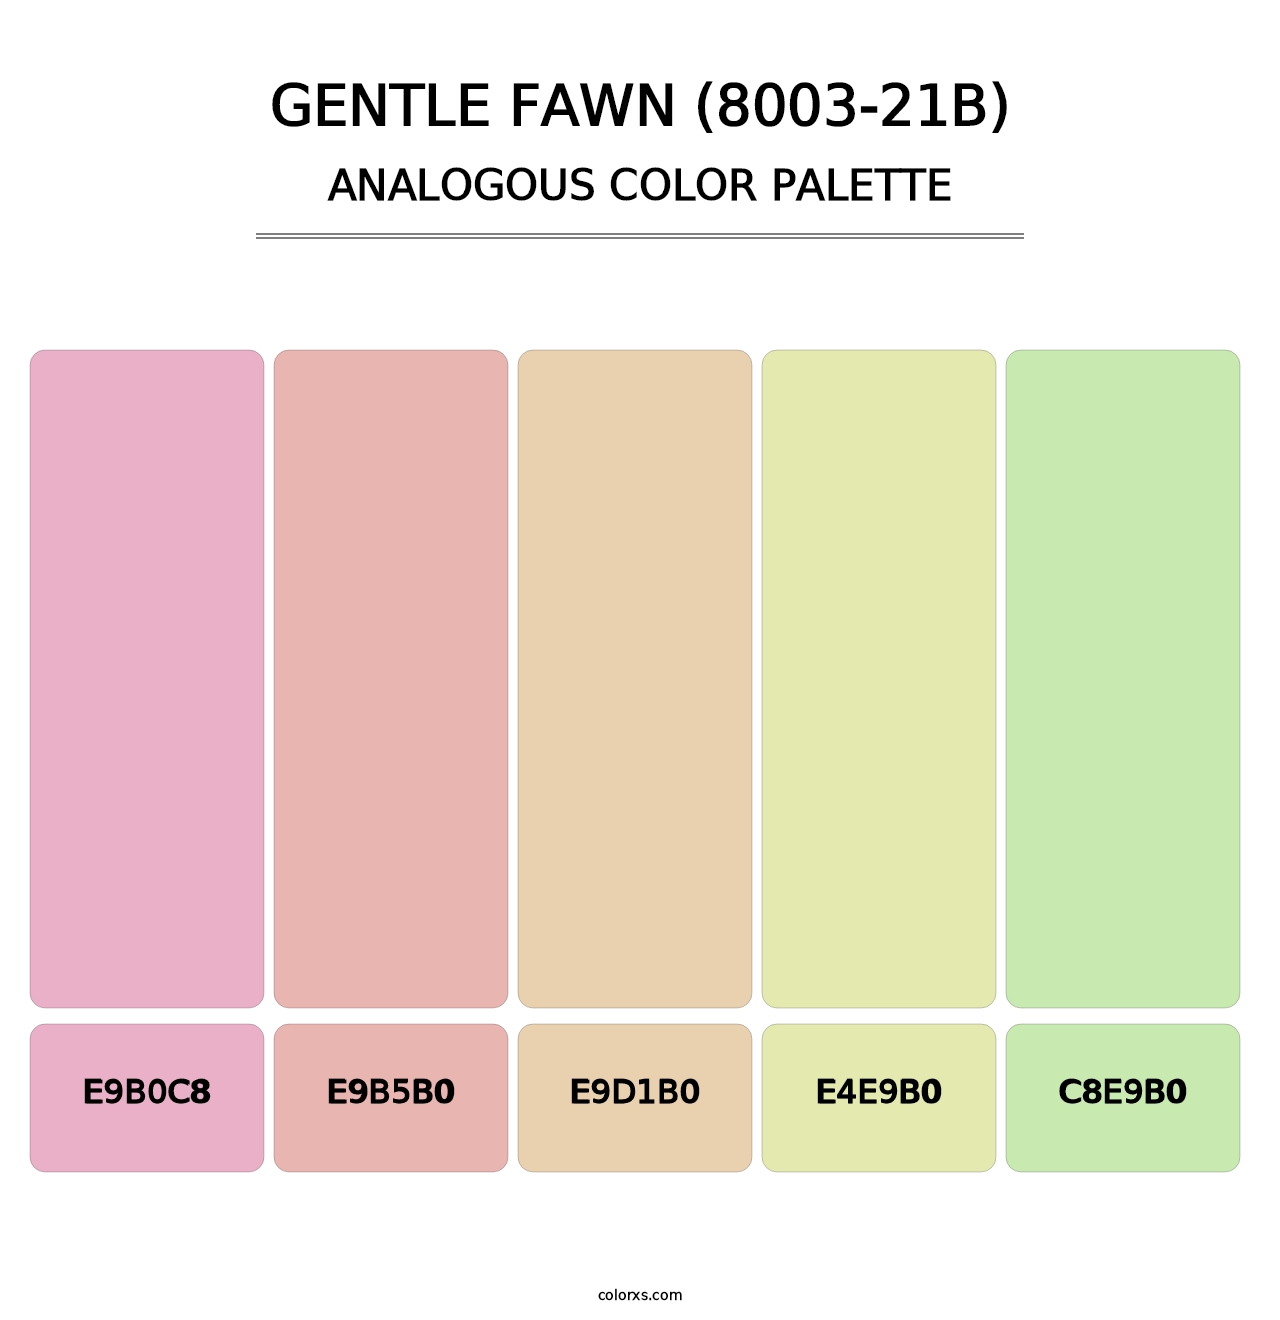 Gentle Fawn (8003-21B) - Analogous Color Palette